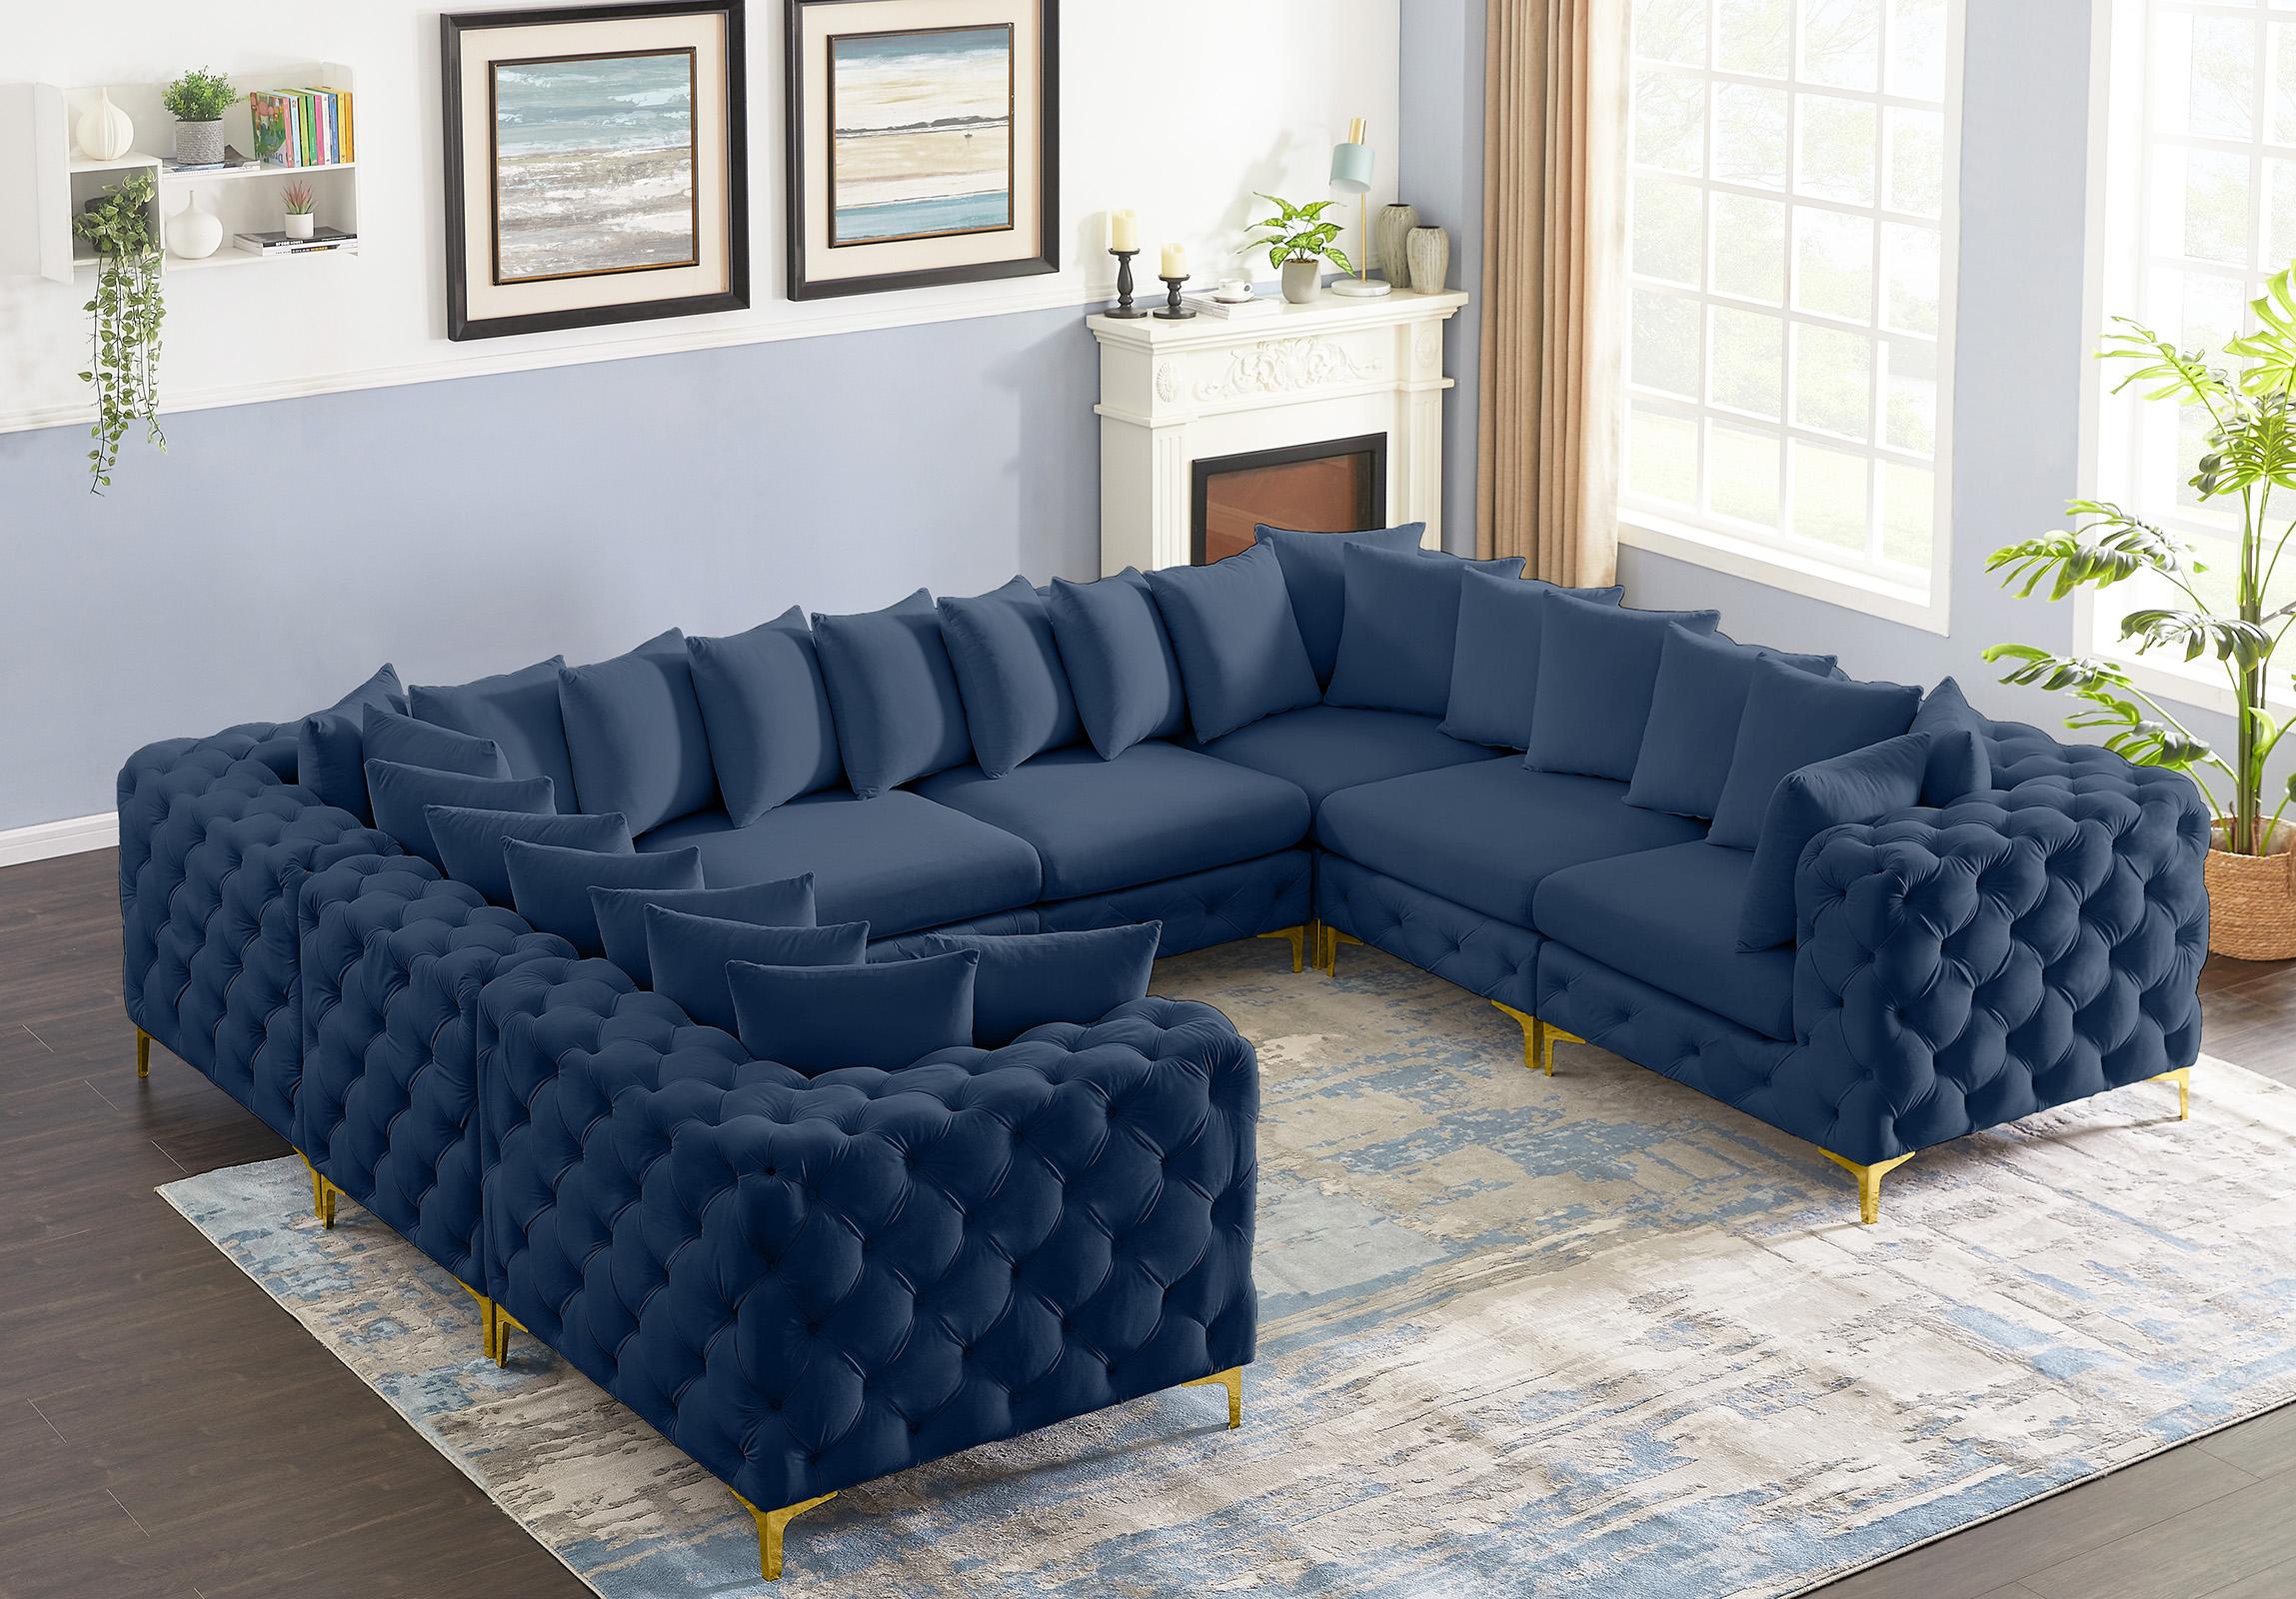 

    
686Navy-Sec8A Meridian Furniture Modular Sectional Sofa
